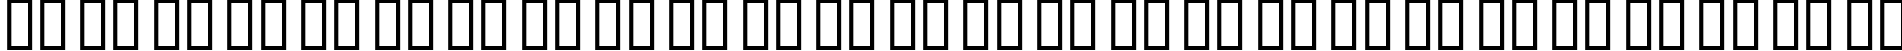 Пример написания английского алфавита шрифтом B Arshia